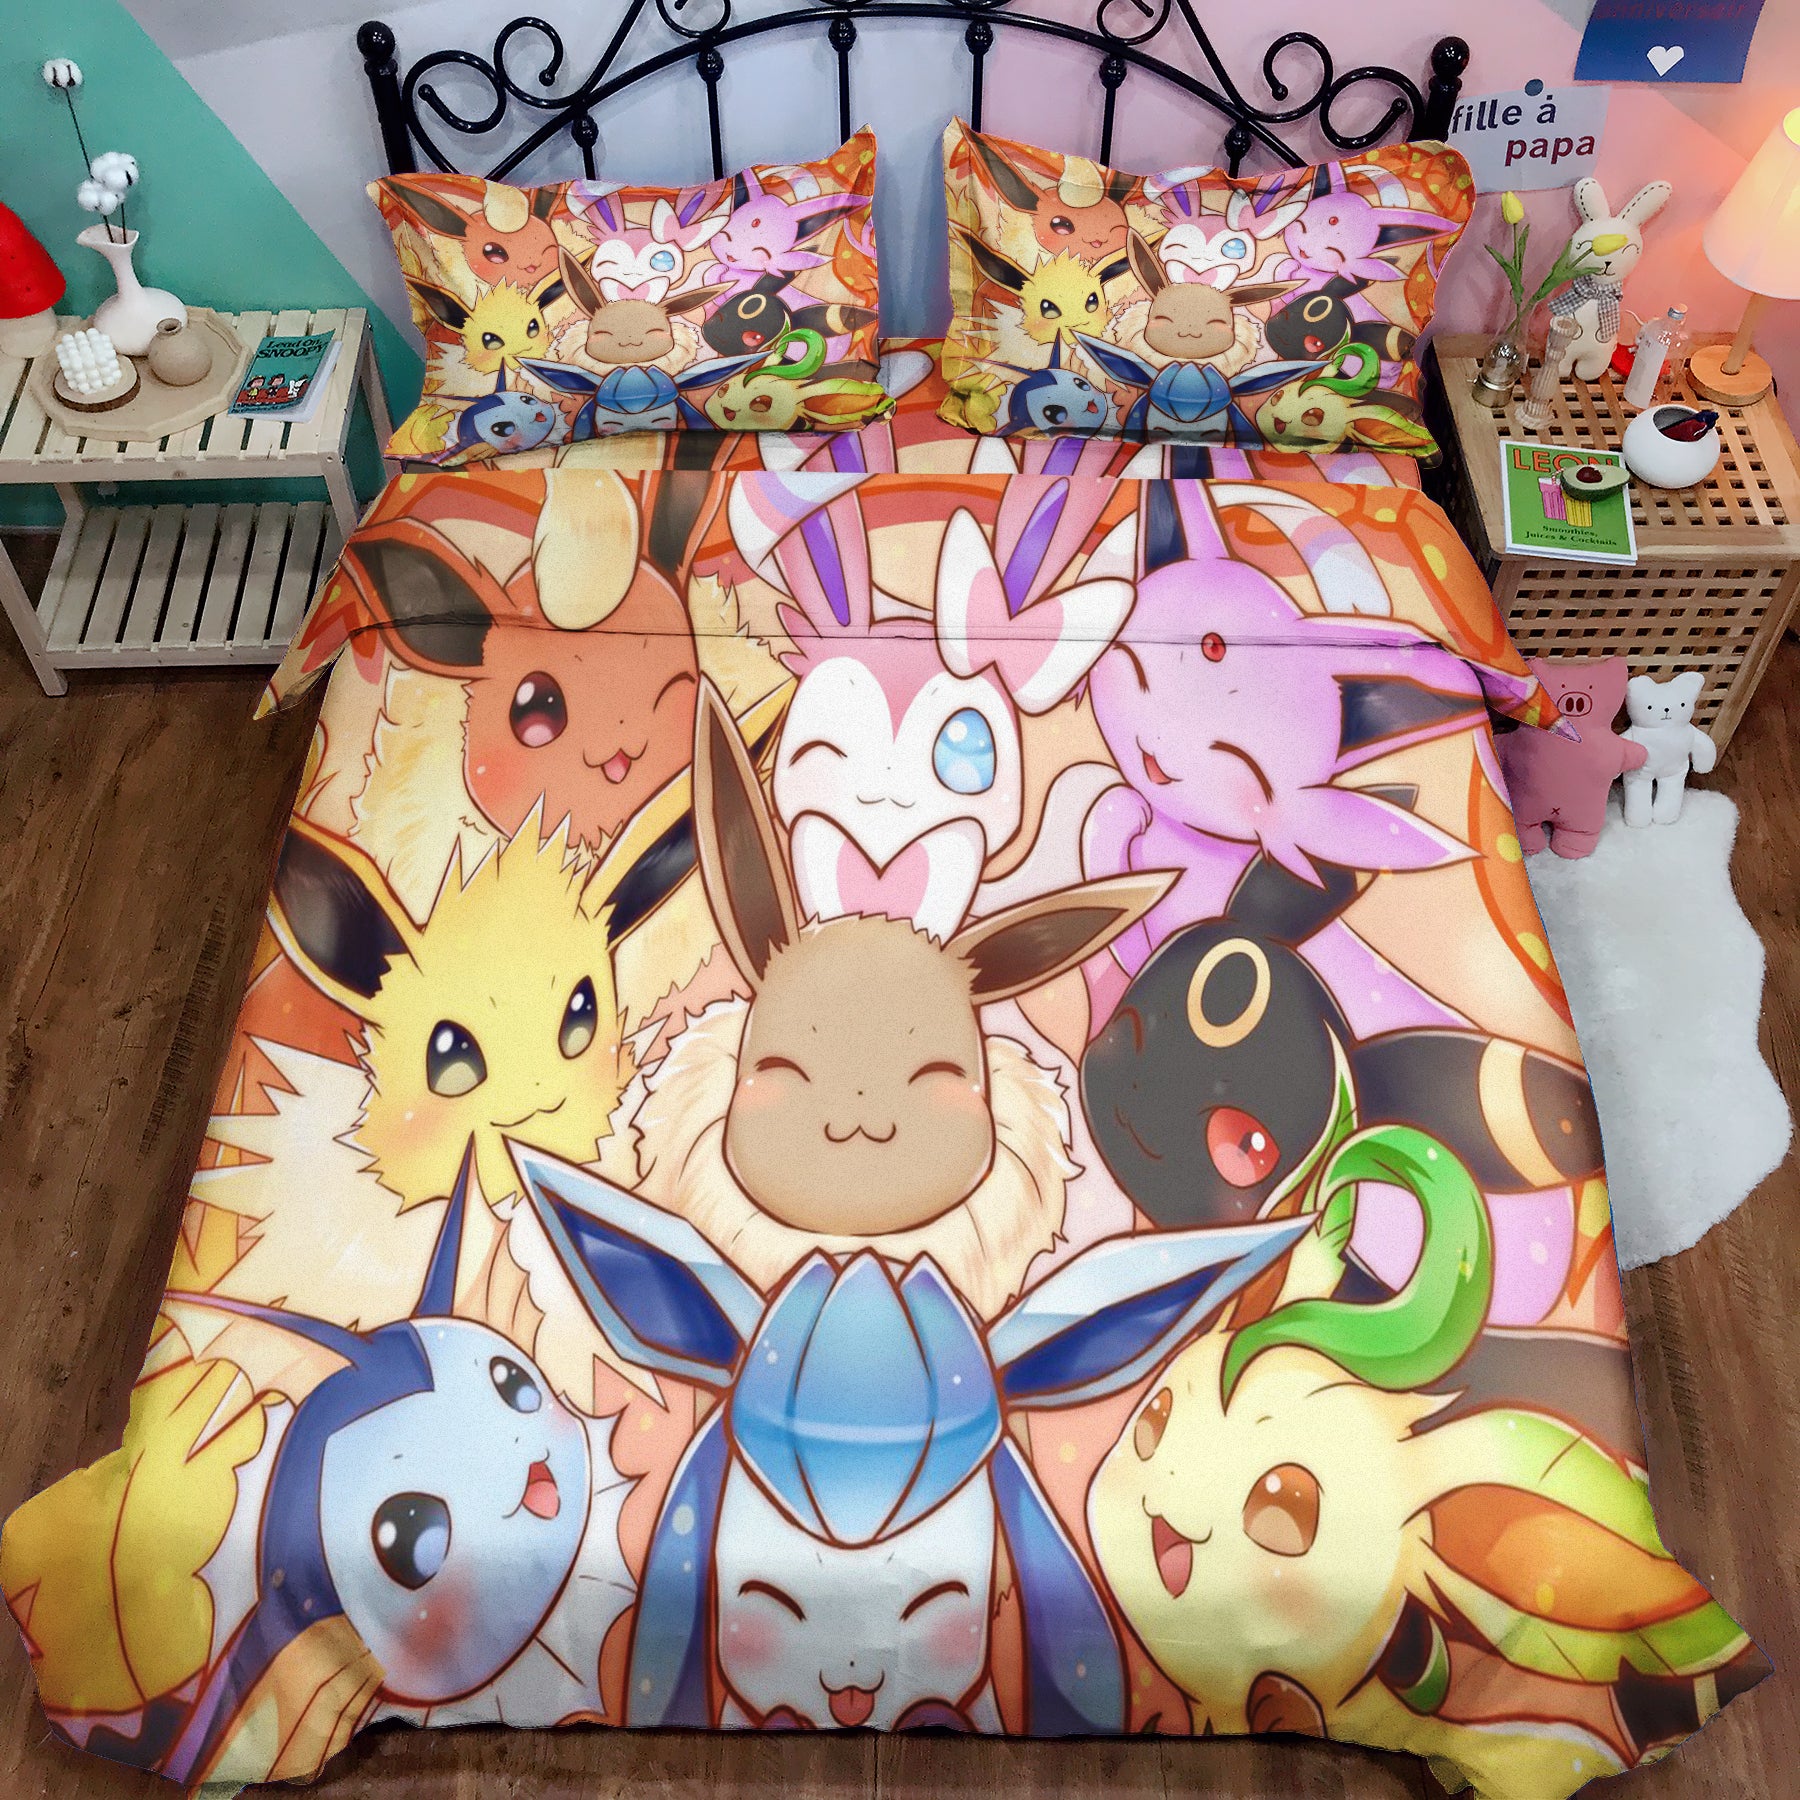 Eevee Evolution Pokemon Family Bedding Set Duvet Cover And 2 Pillowcases